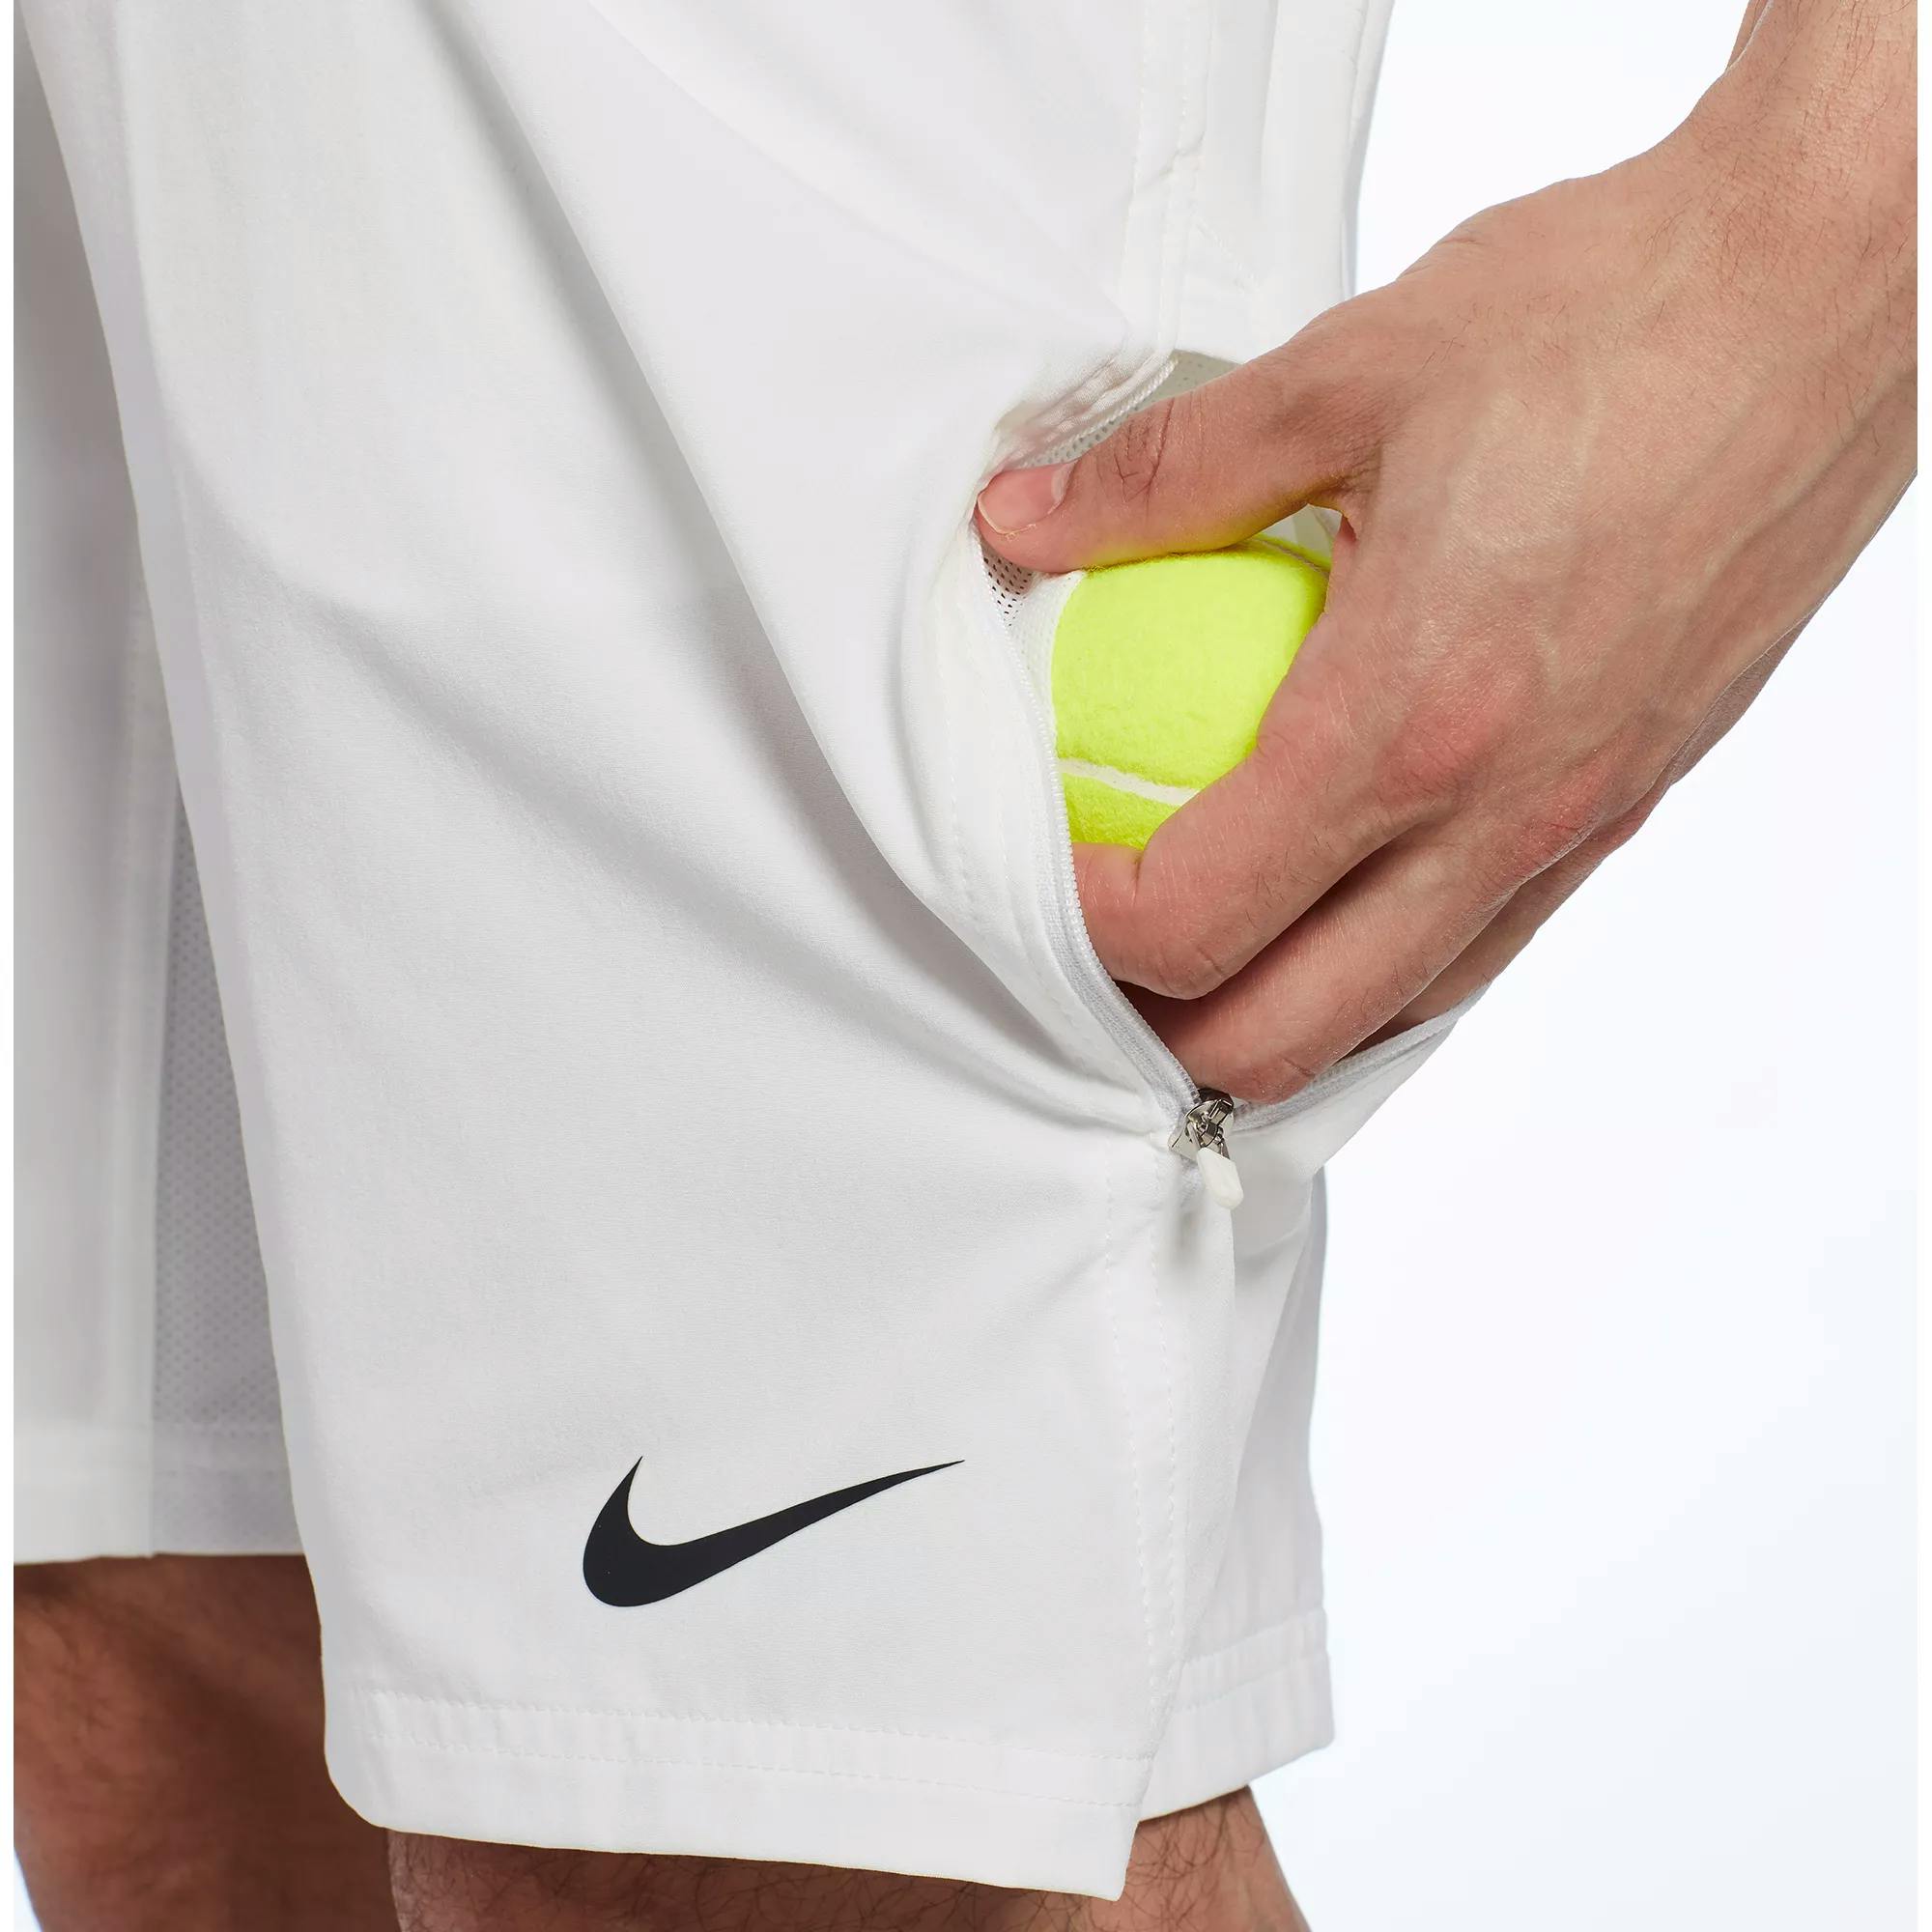 Nike Men's Net Woven 11in Tennis Shorts